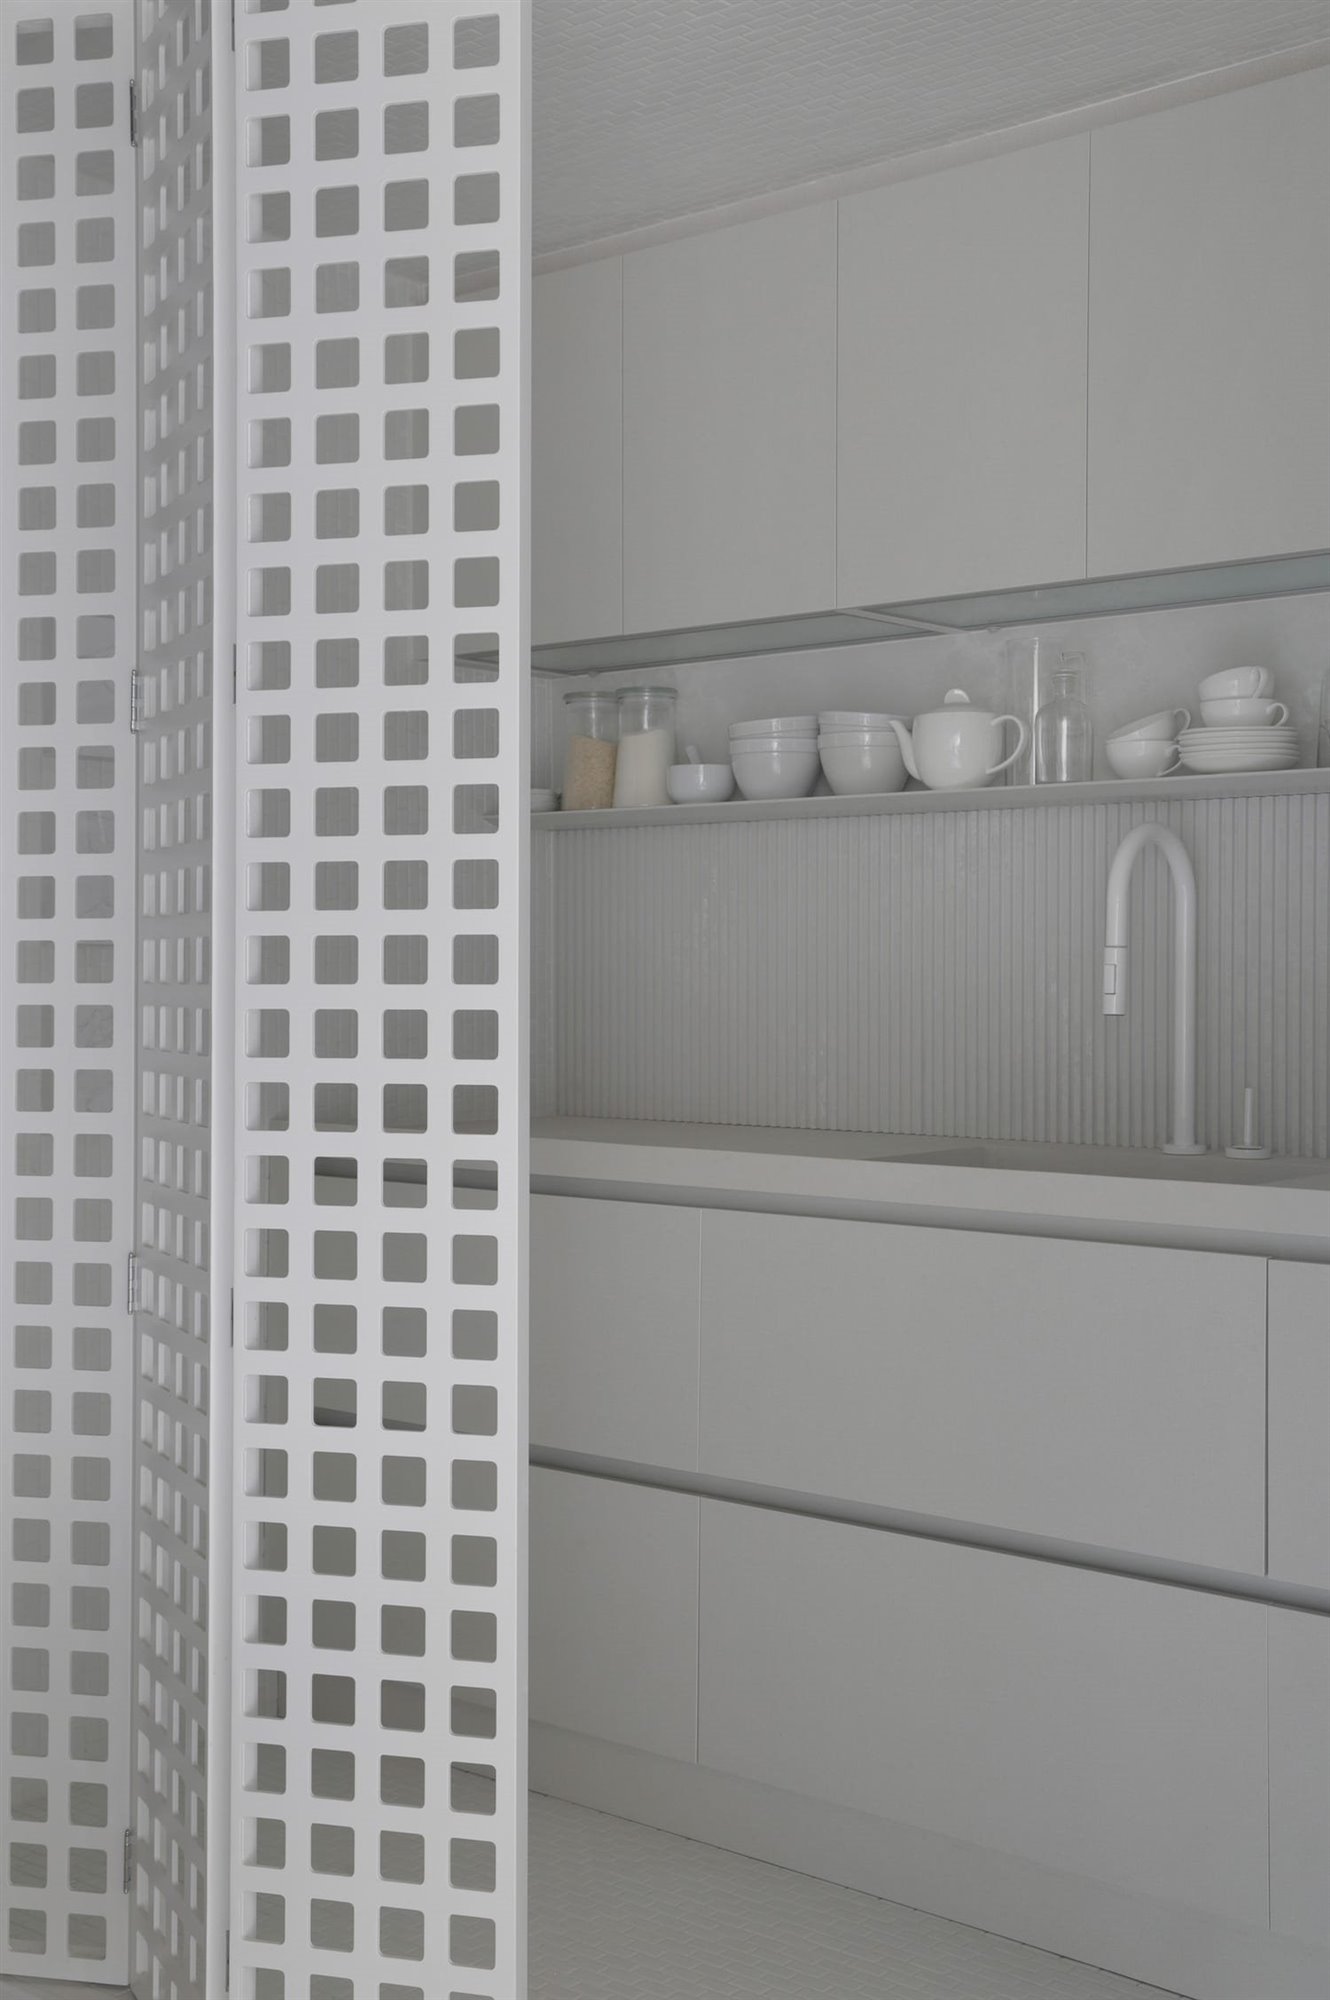 Detalle interior módulo cocina con puerta plegable perforada con motivos cuadrados, encimera, zona de aguas, estantes y amarios